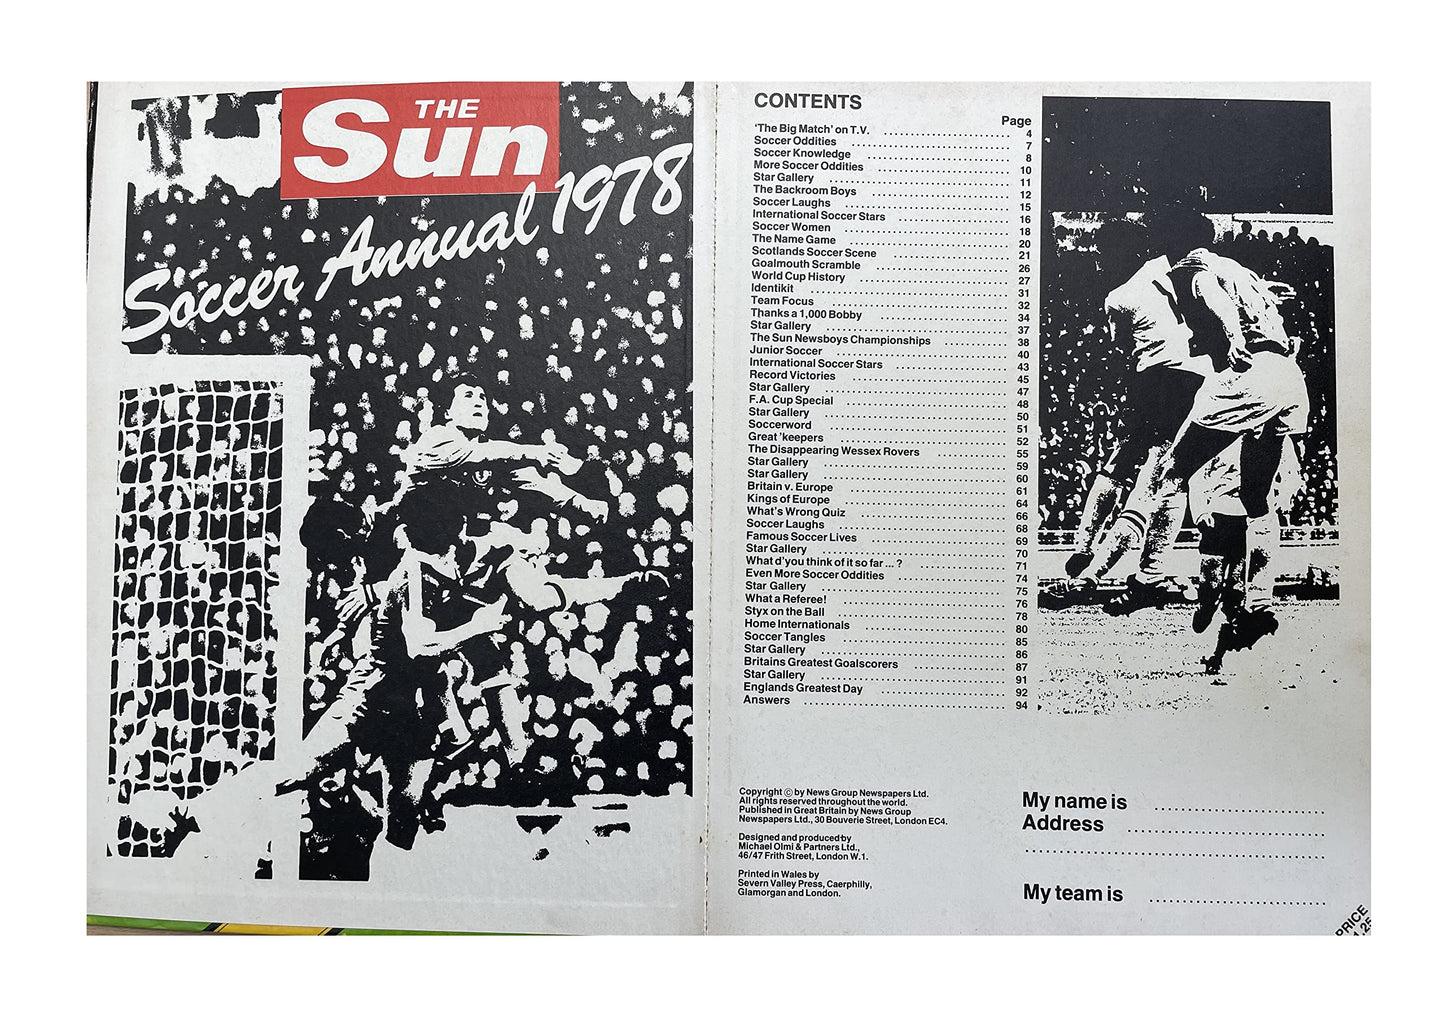 Vintage The Sun Soccer Annual 1978